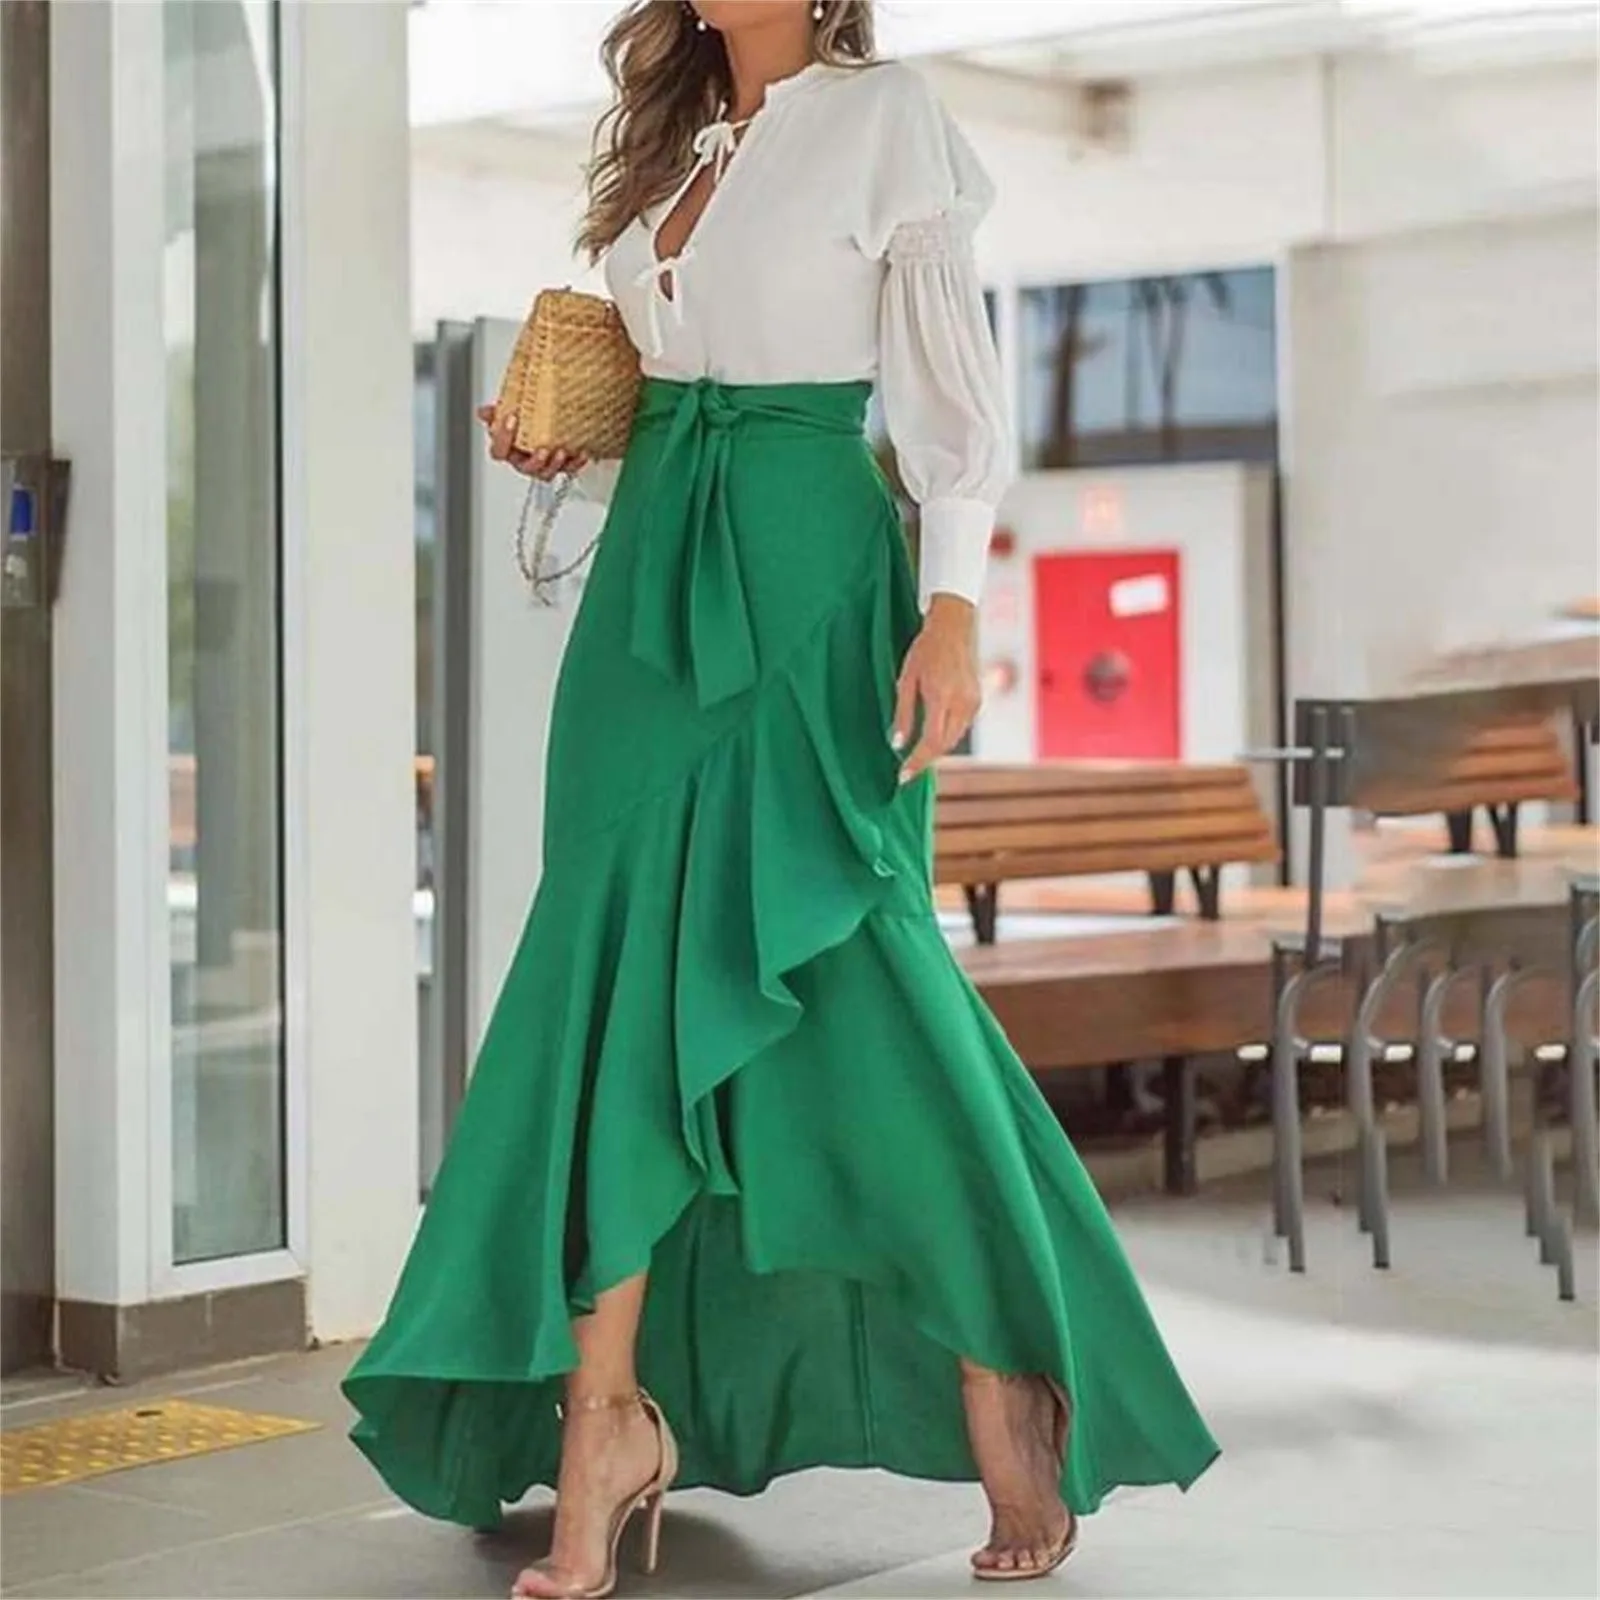 

Irregular Ruffles Half Skirt For Women Elegance High Waist A-Line Wrap Hip Fishtail Maxi Office Work Long Skirts With Bow Belt